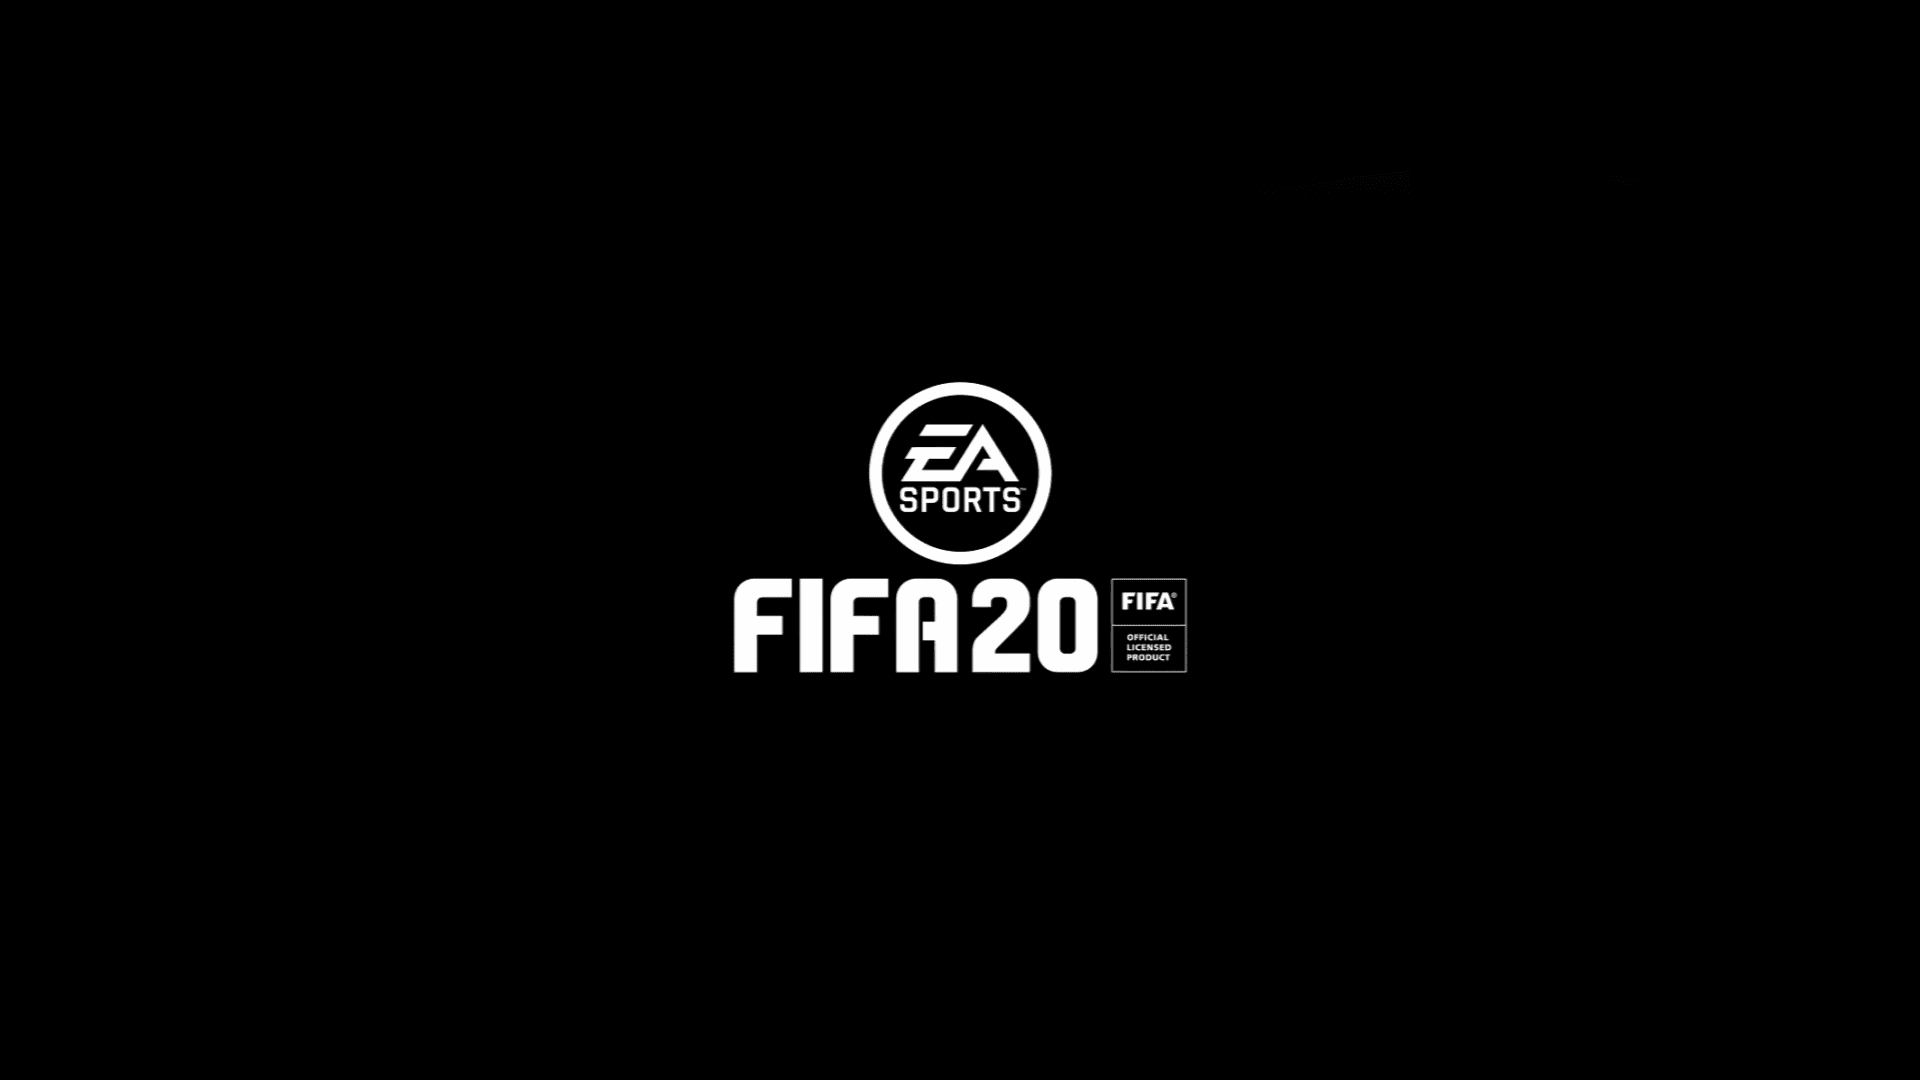 رسميًا الكشف عن لعبة FIFA 20 سيكون يوم 8 يونيو 2019 في حدث EA PLAY